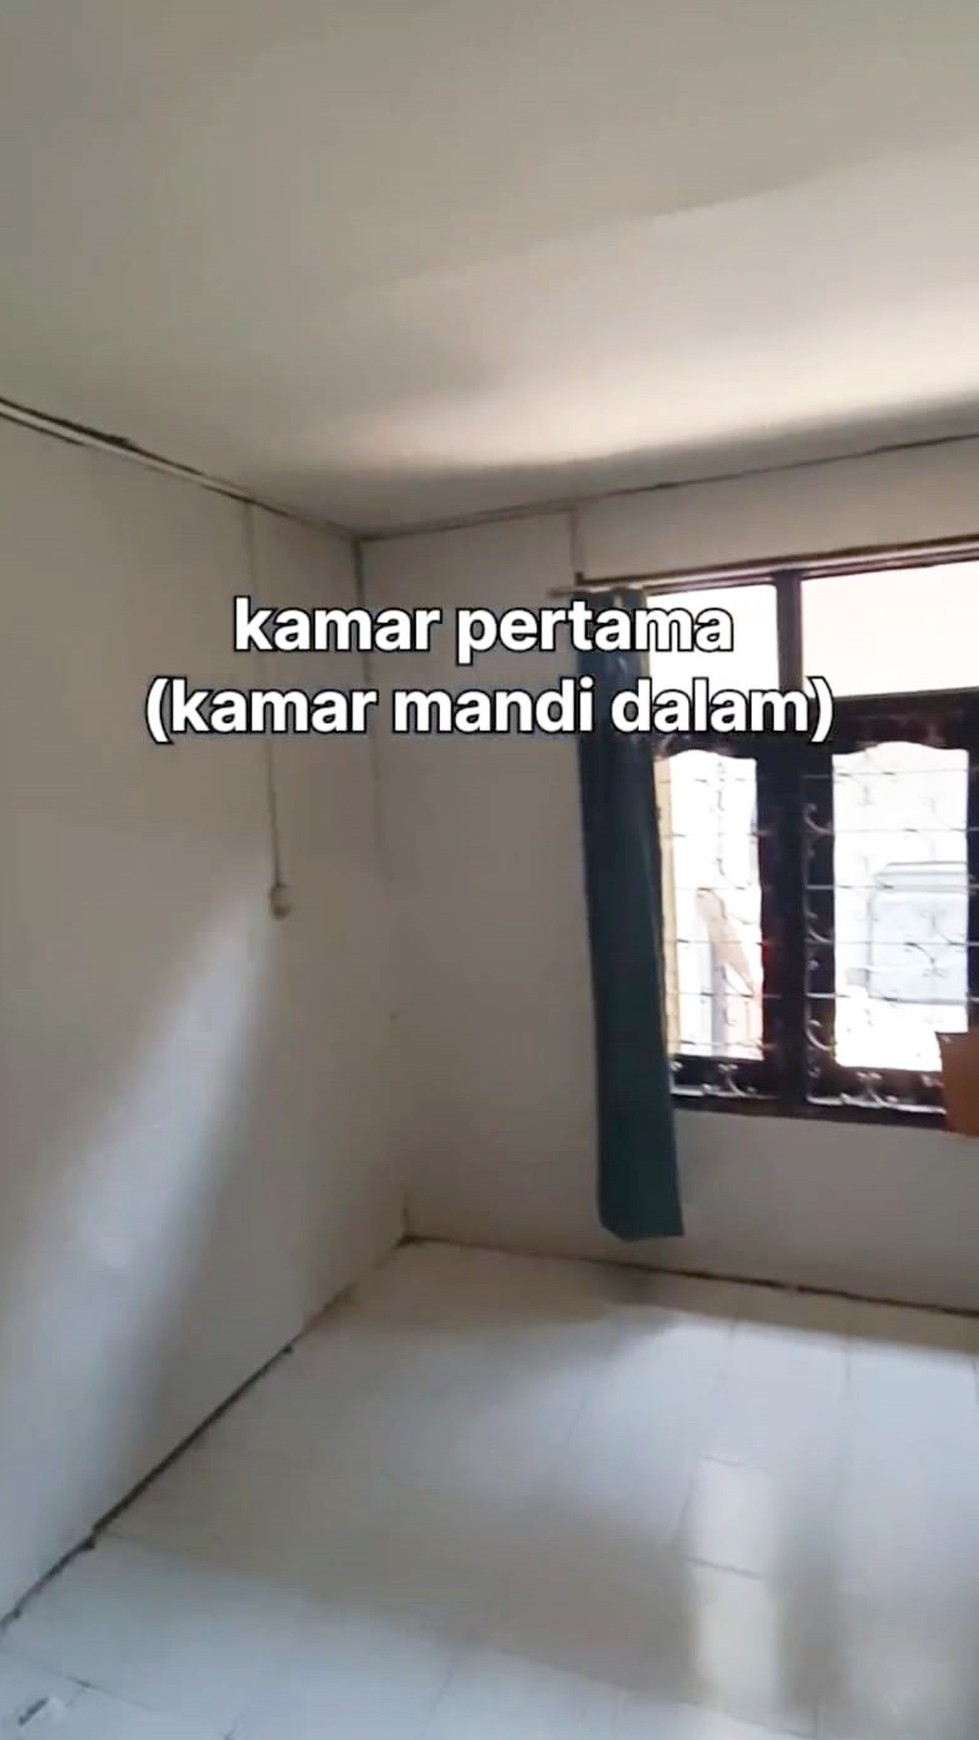 Rumah di Jalan Raden Wijaya Mojokerto, Strategis Dekat RSU Gatoel, Cocok untuk usaha Kost2an dsb, Nol Jalan Raya